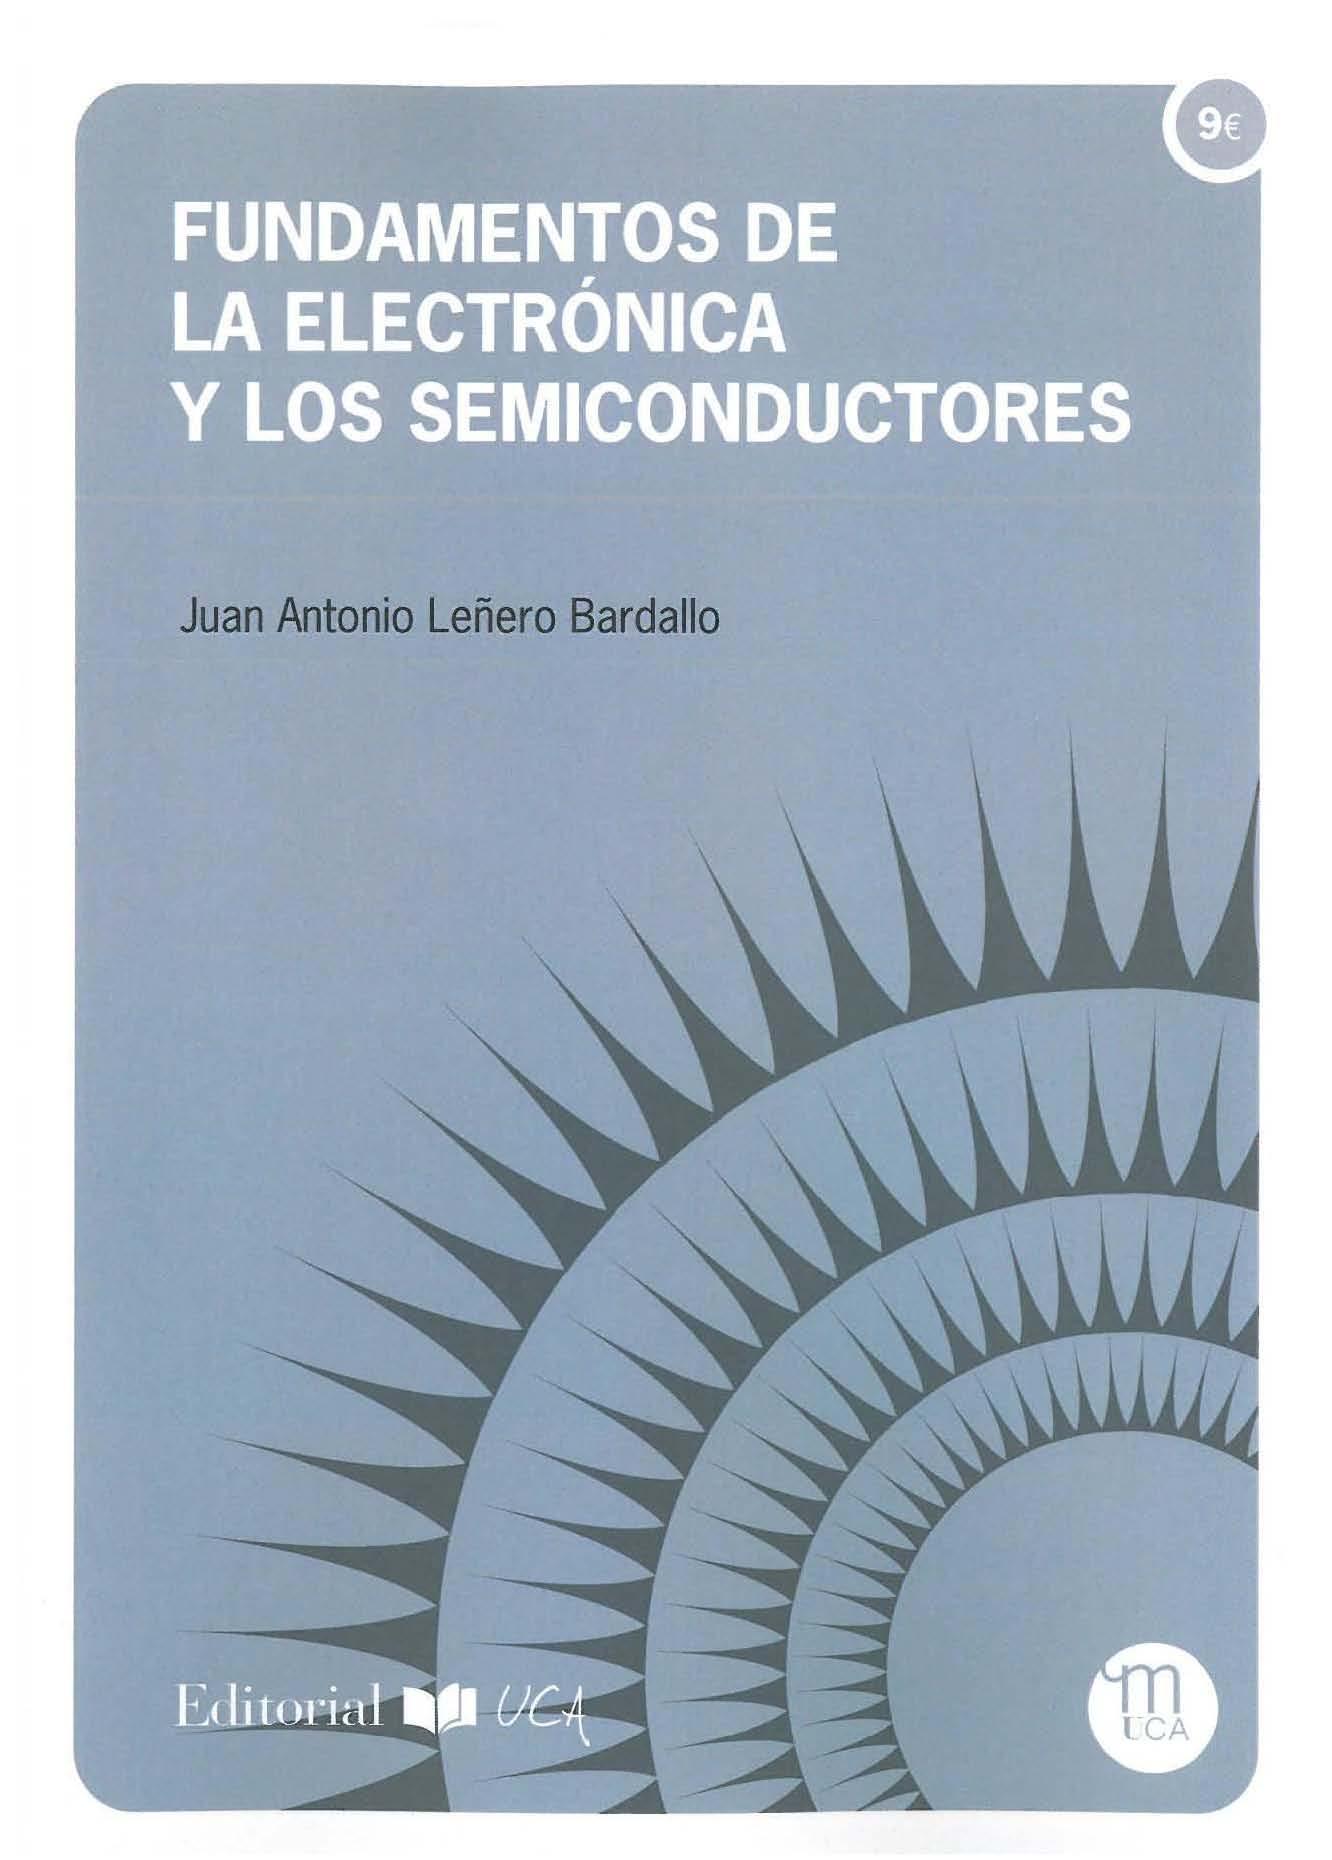 Imagen de portada del libro Fundamentos de la electrónica y los semiconductores